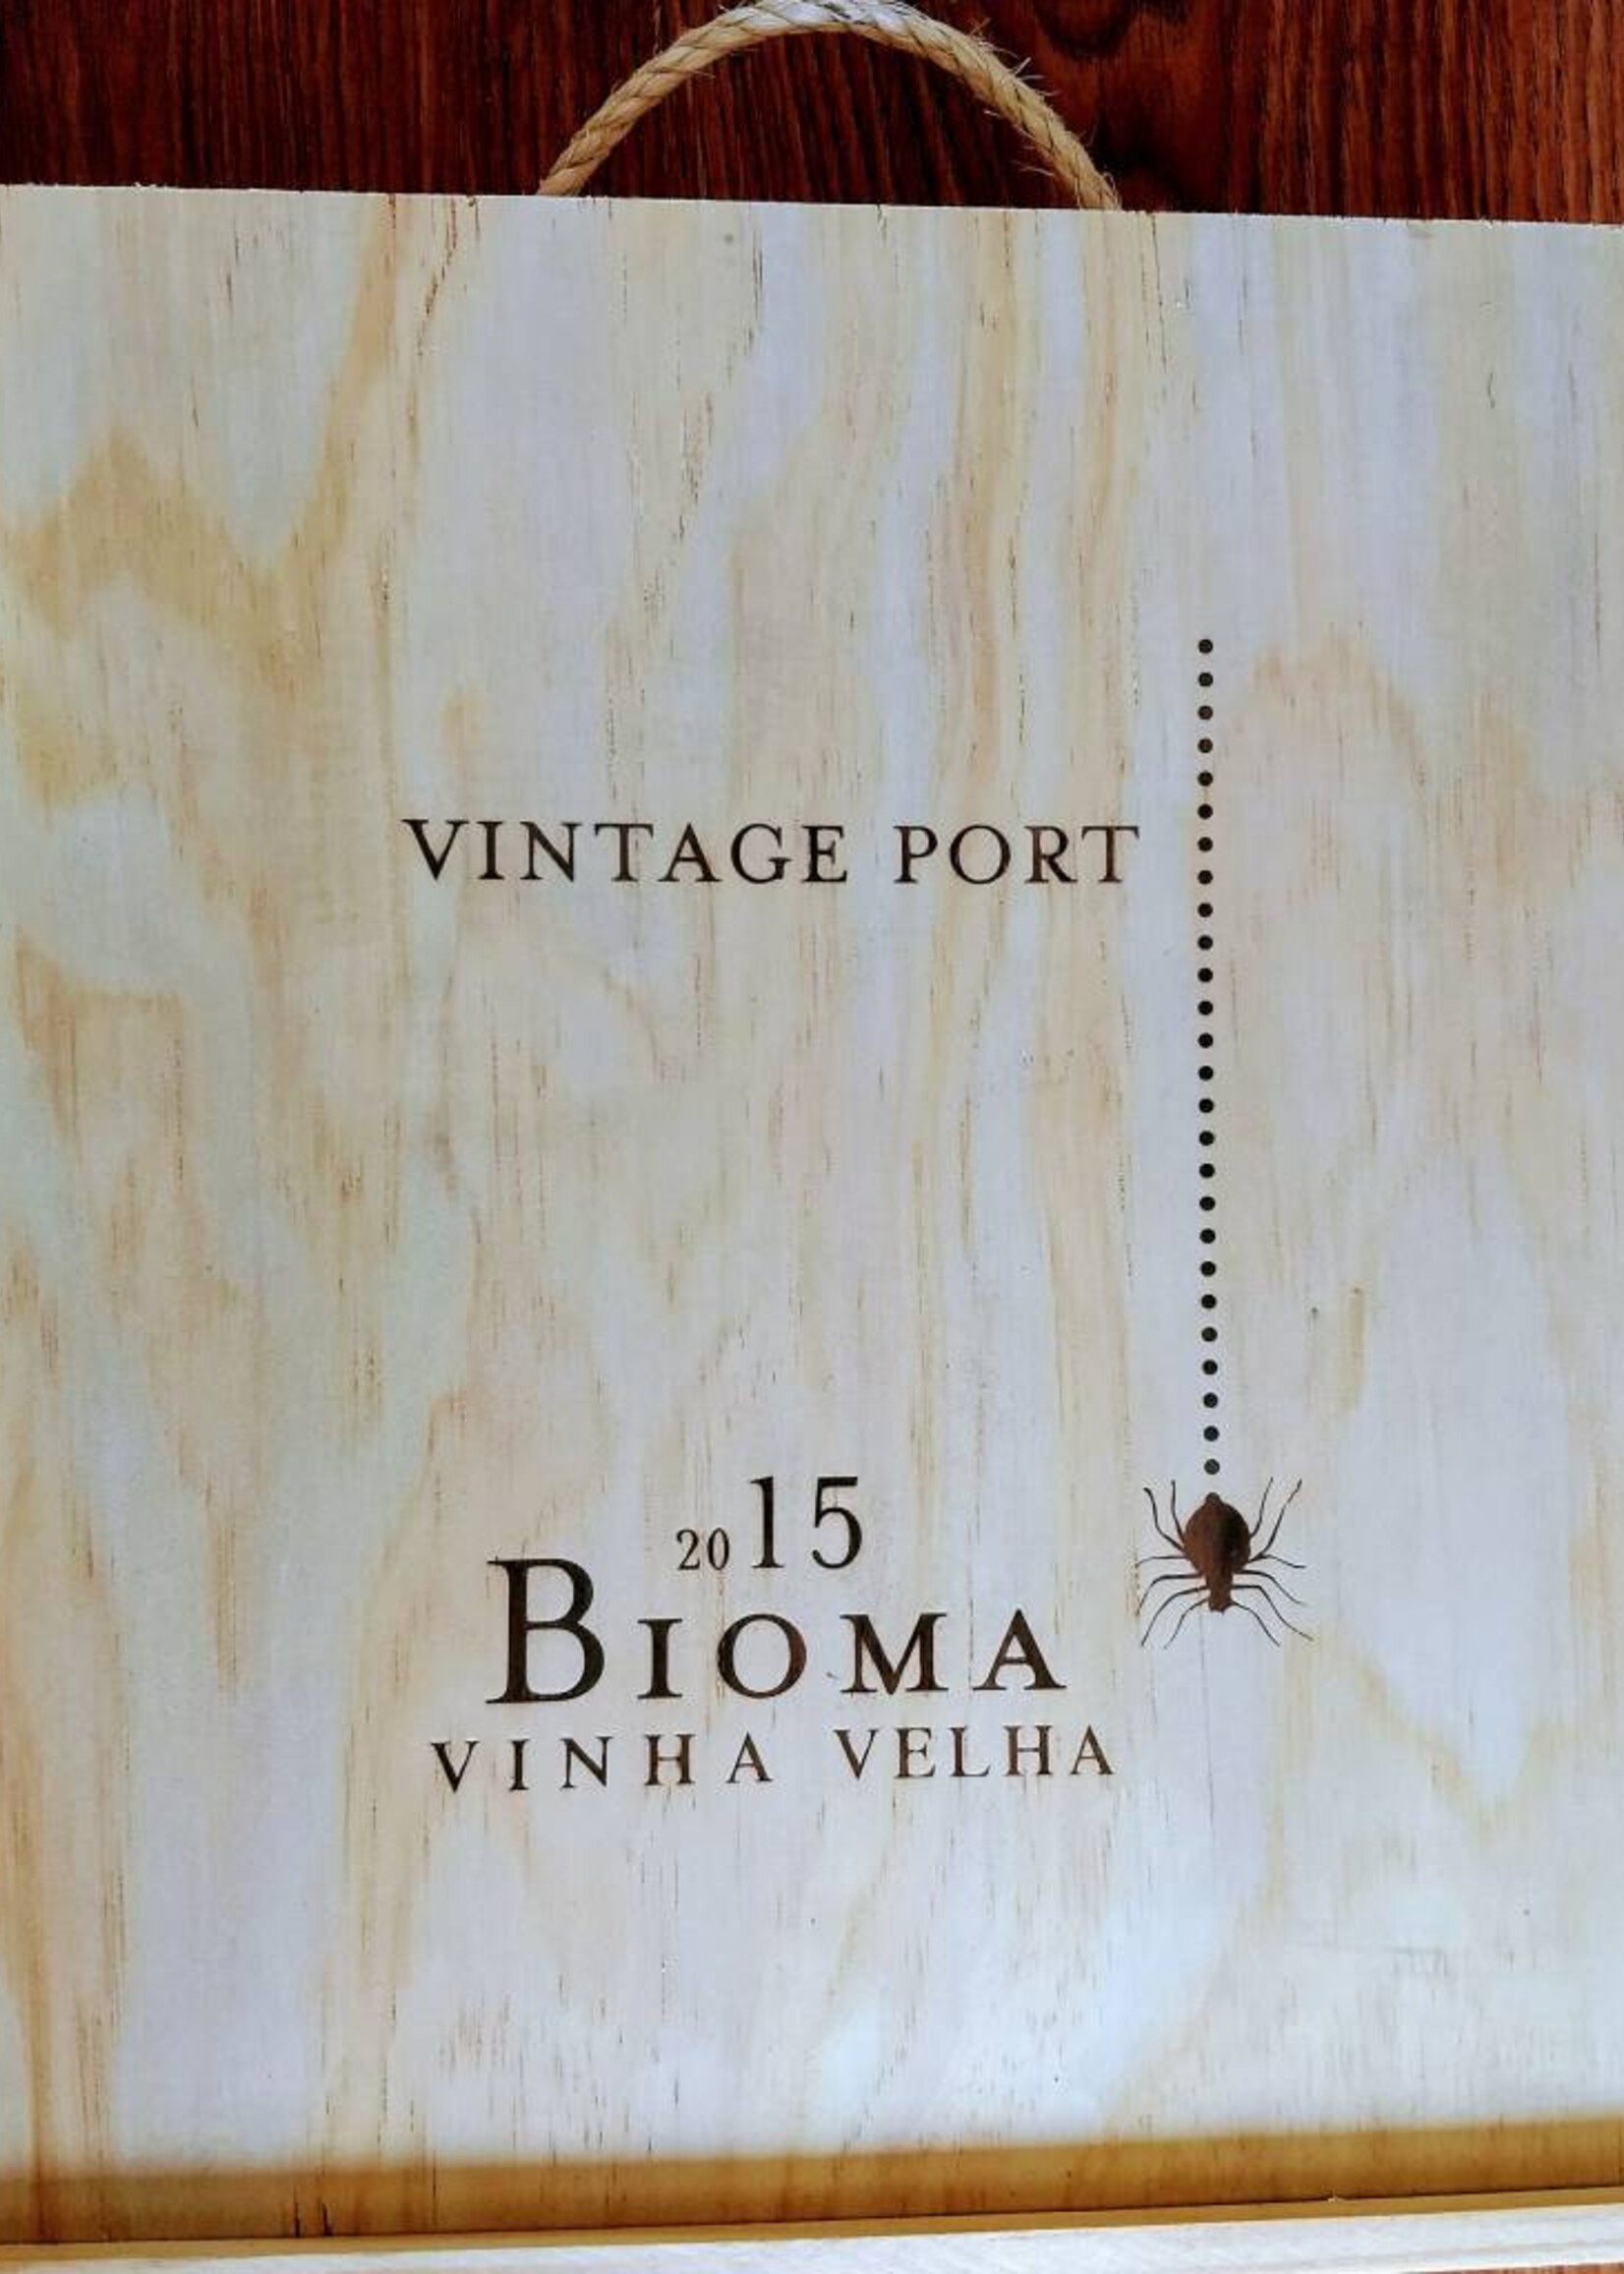 Niepoort Port Wooden box of 3 bottles Vintage Port Bioma VV 2015